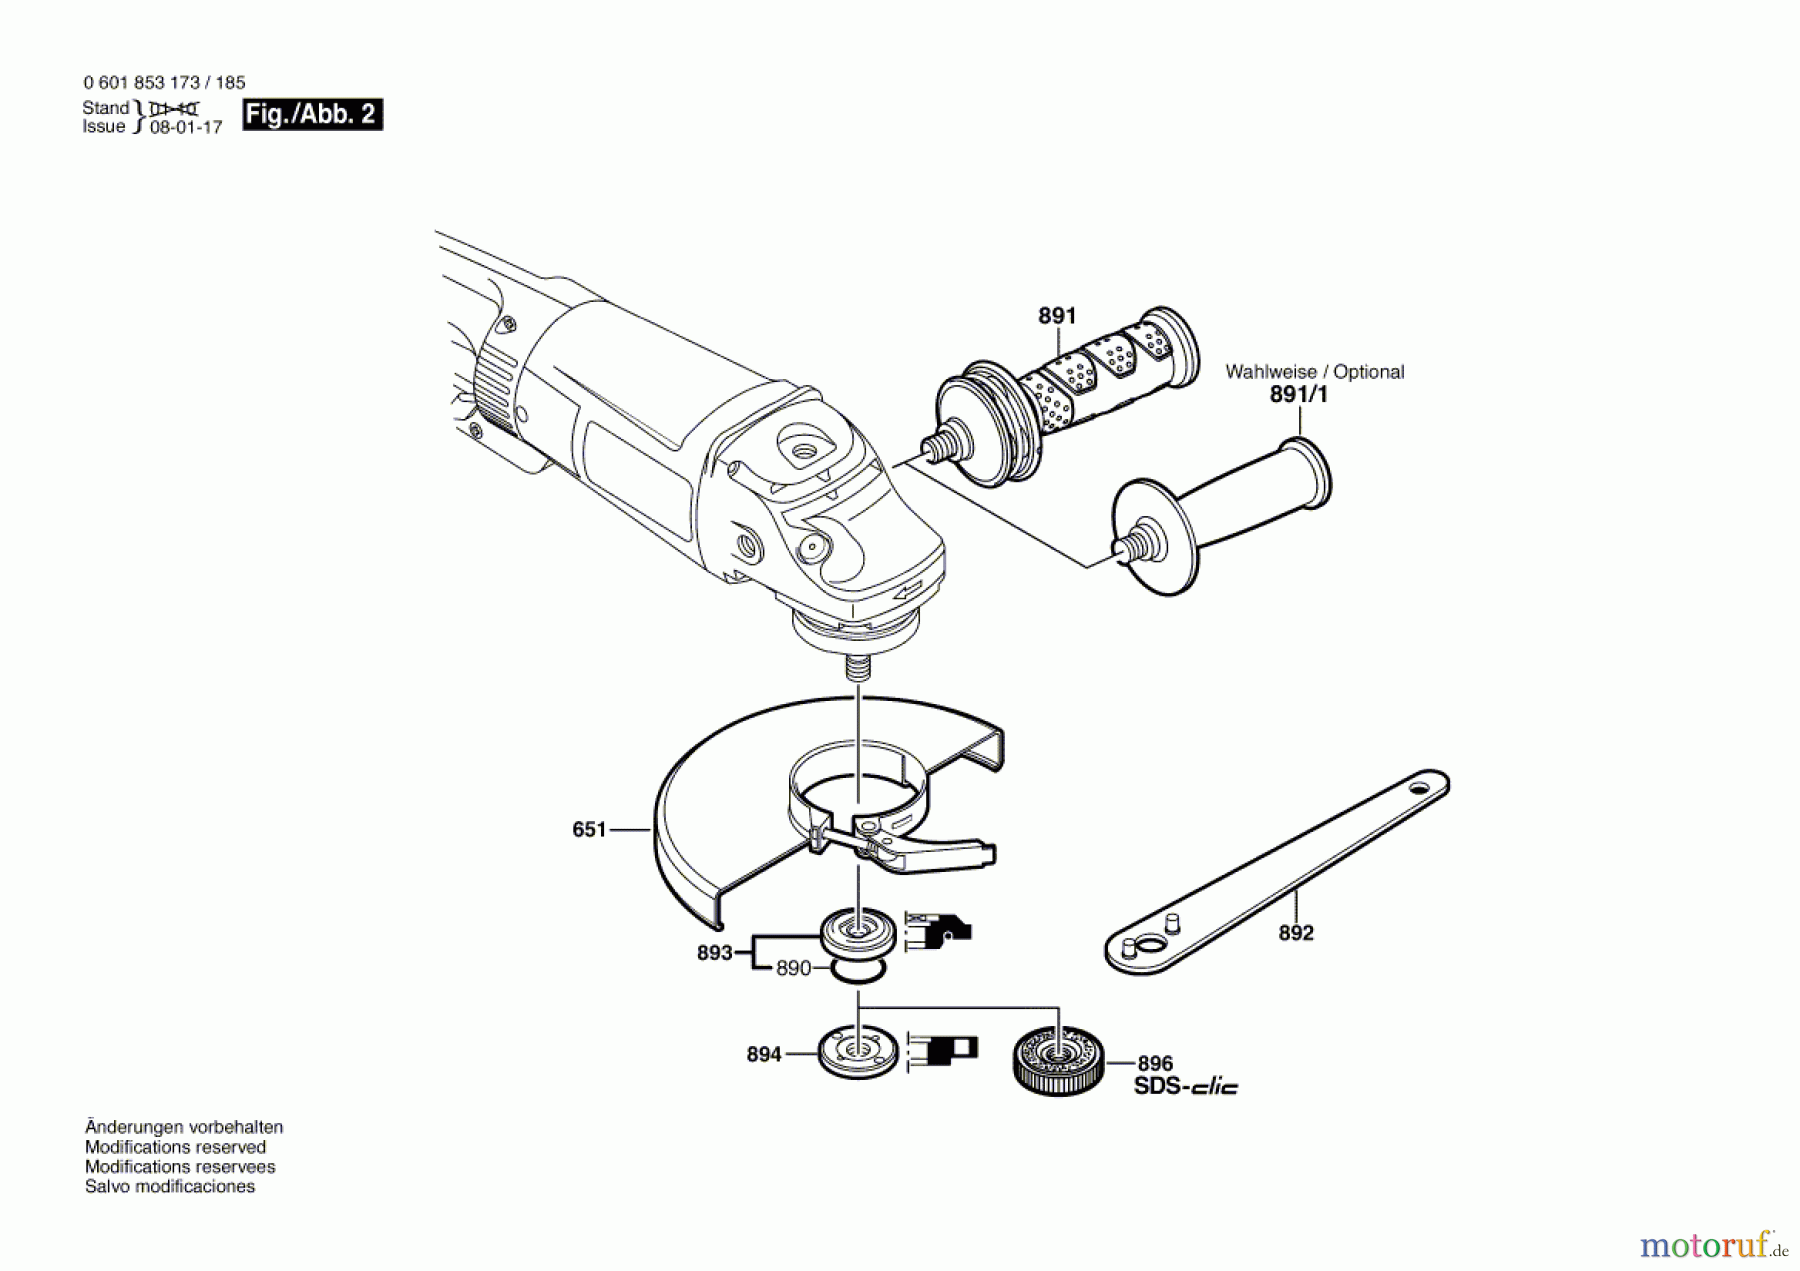  Bosch Werkzeug Winkelschleifer GWS 24-180 B Seite 2